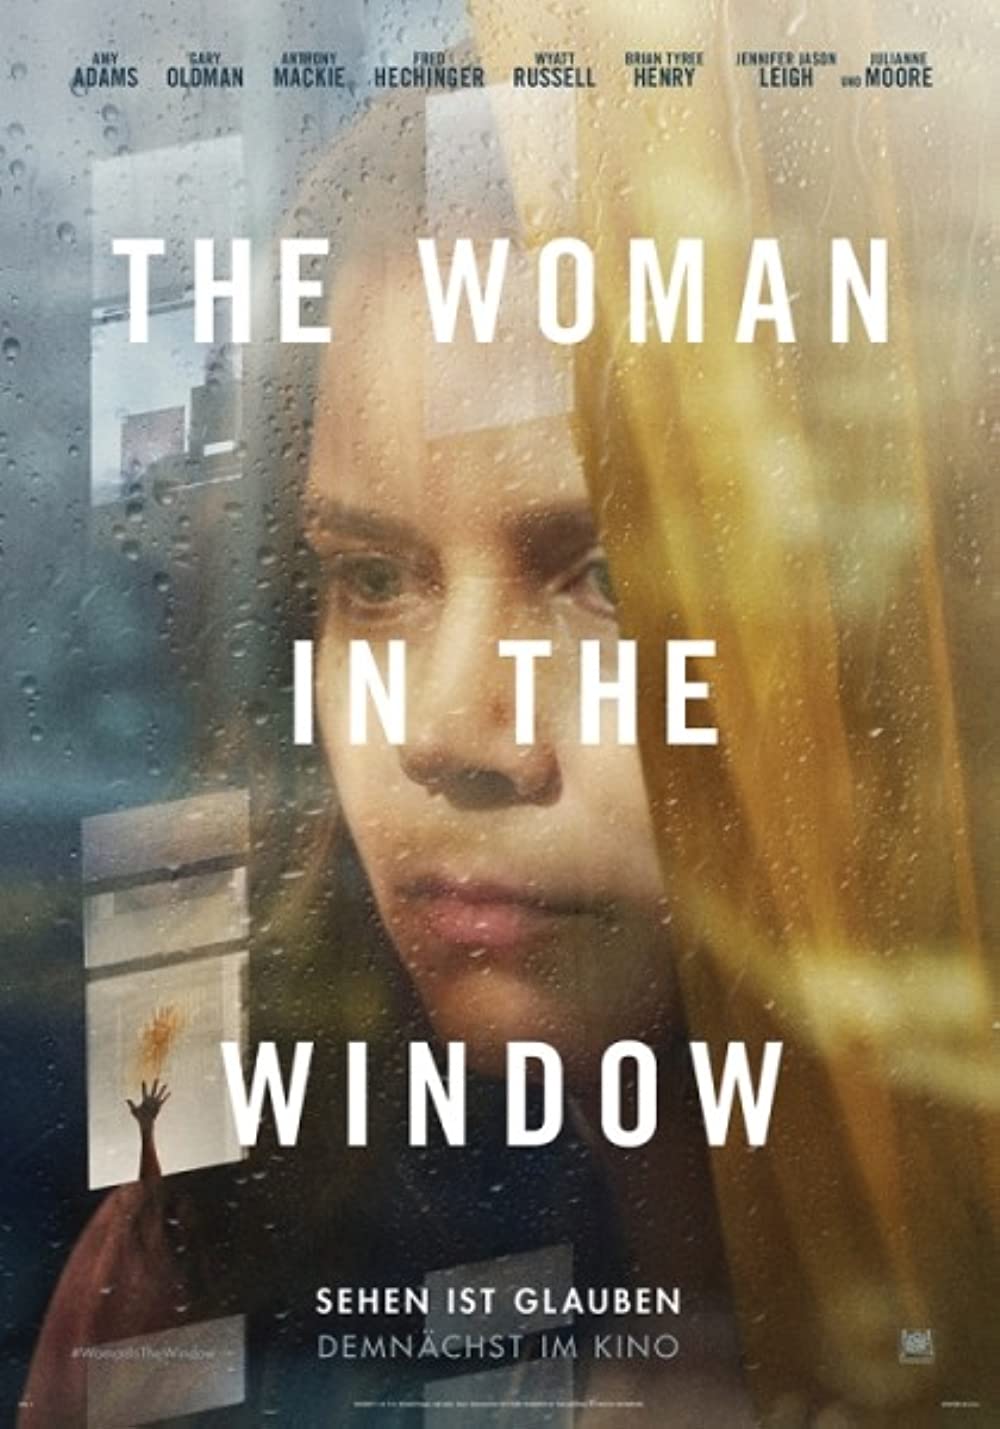 Filmbeschreibung zu The Woman in the Window